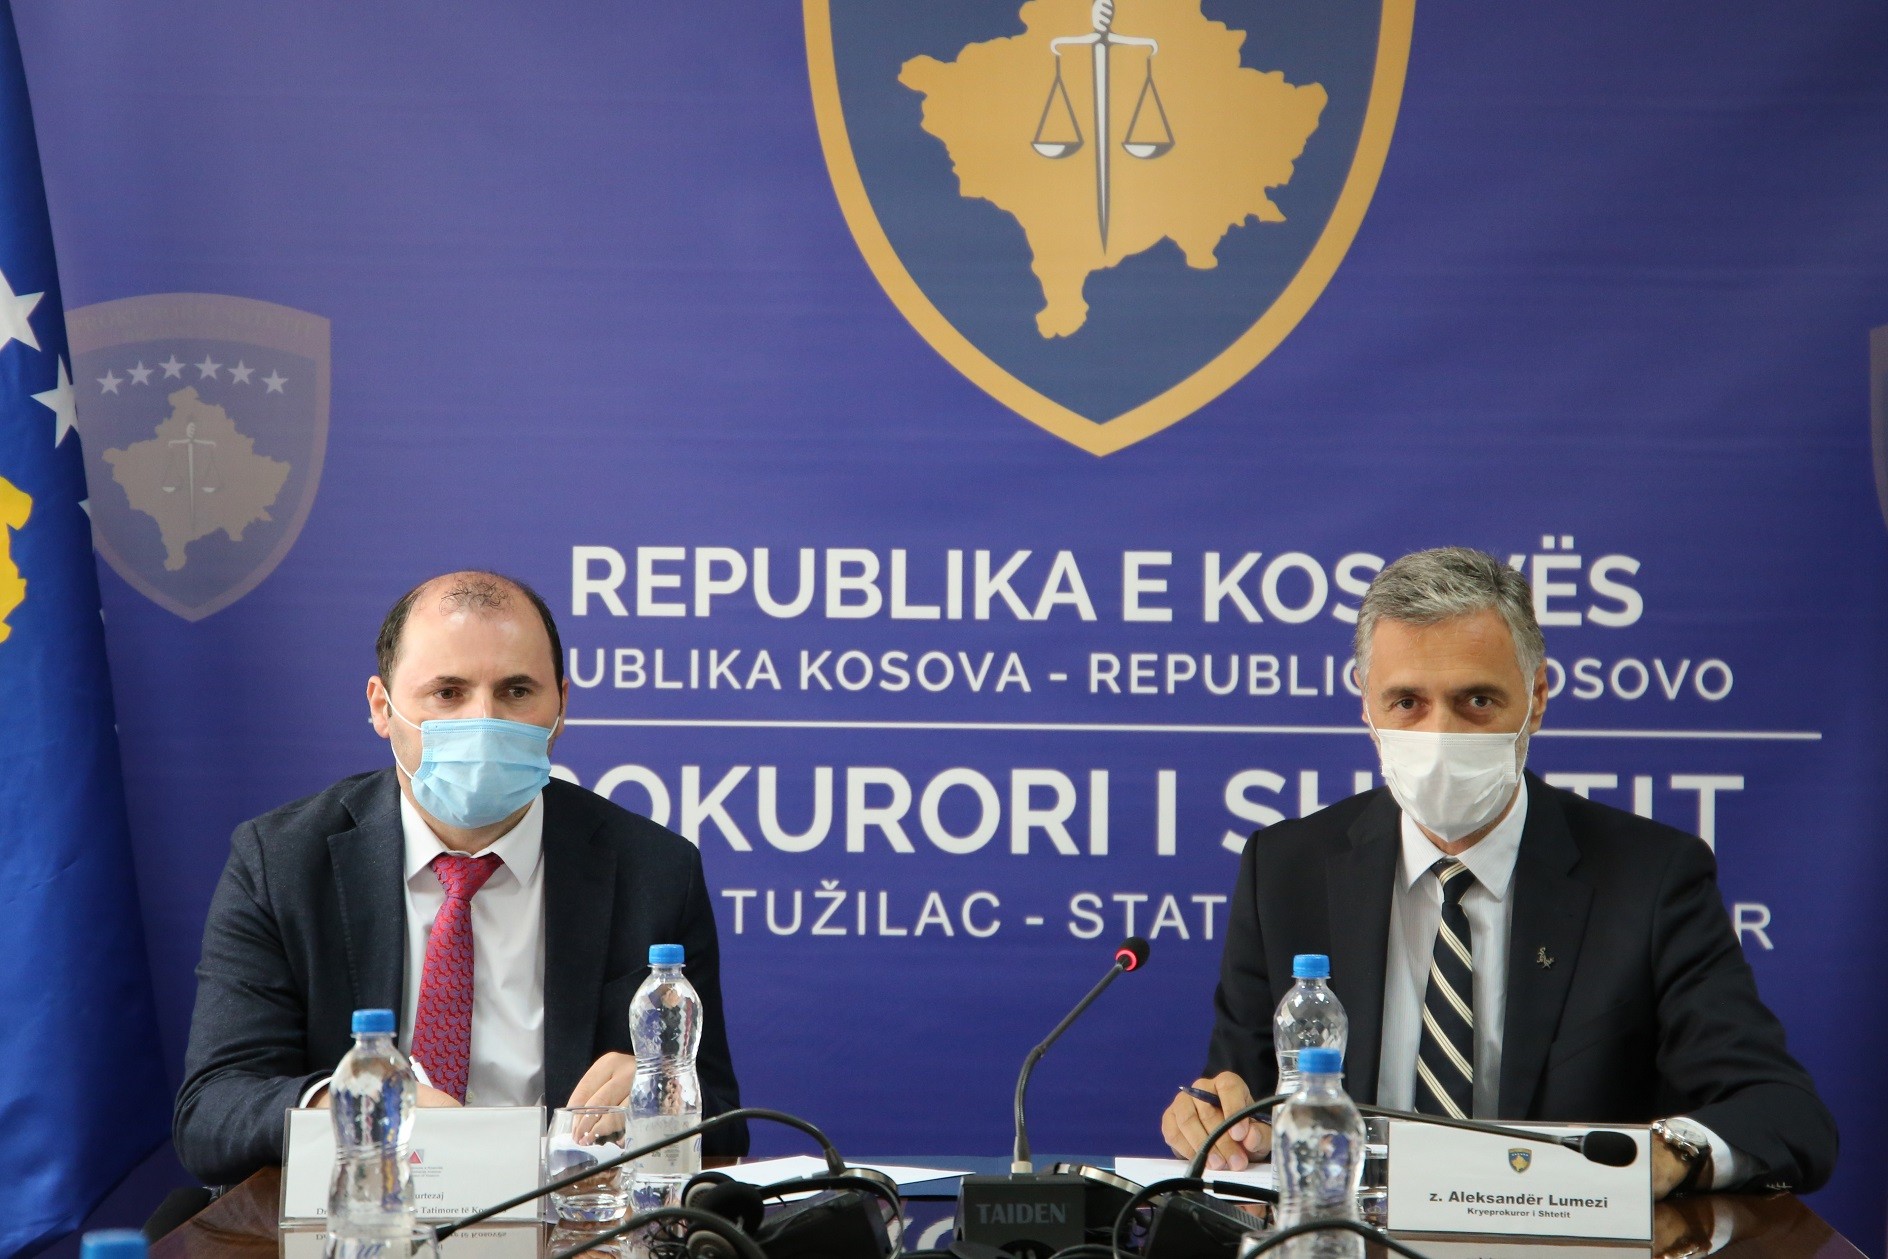  ATK dhe Kryeprokurori i Shtetit intensifikojnë veprimet për bashkëpunim